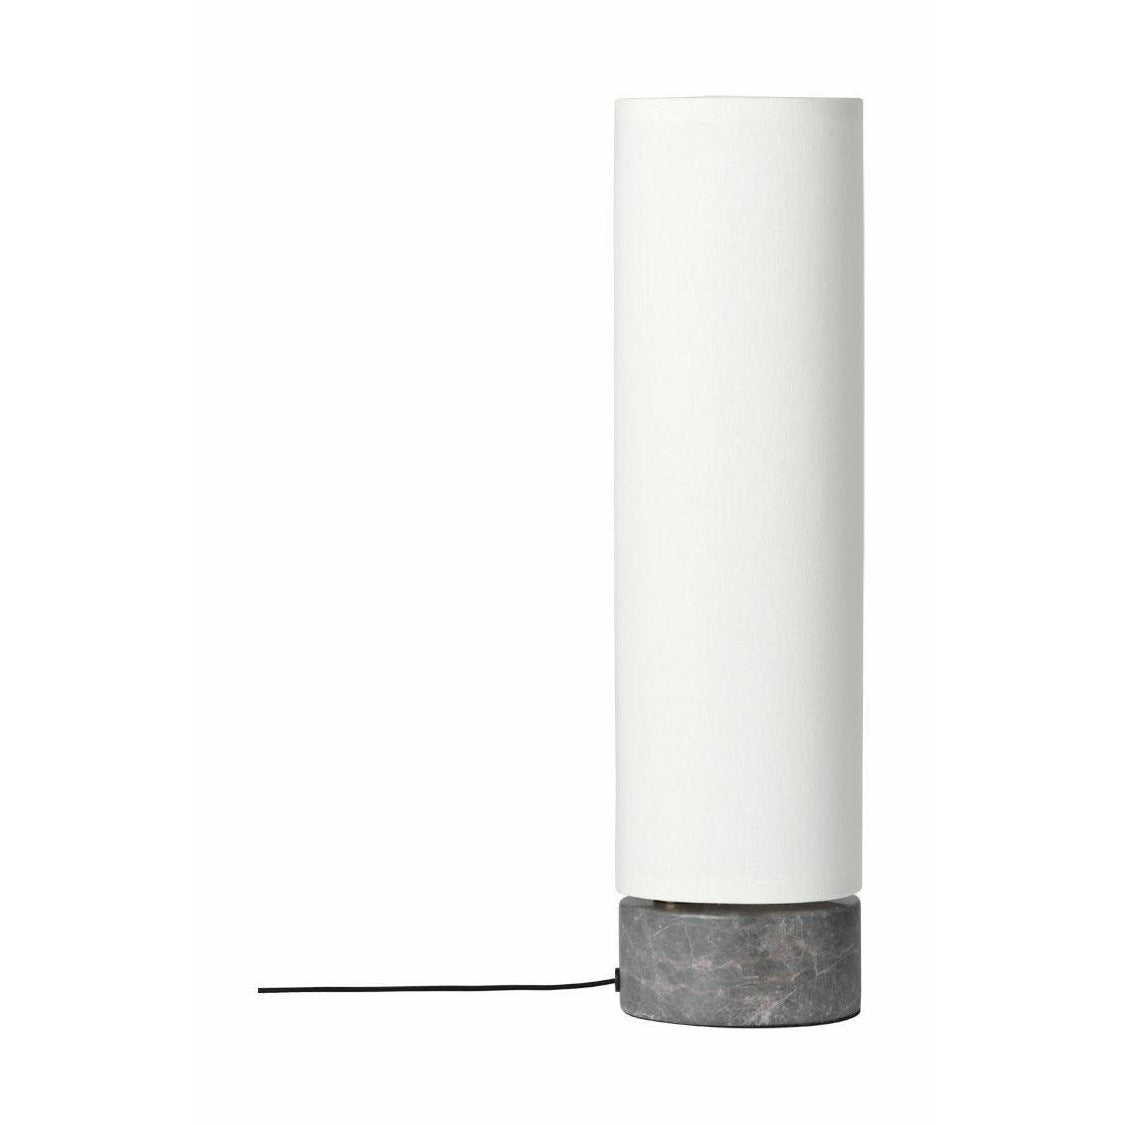 Gubi Lampe de table non liée Øx h 12x45, blanc